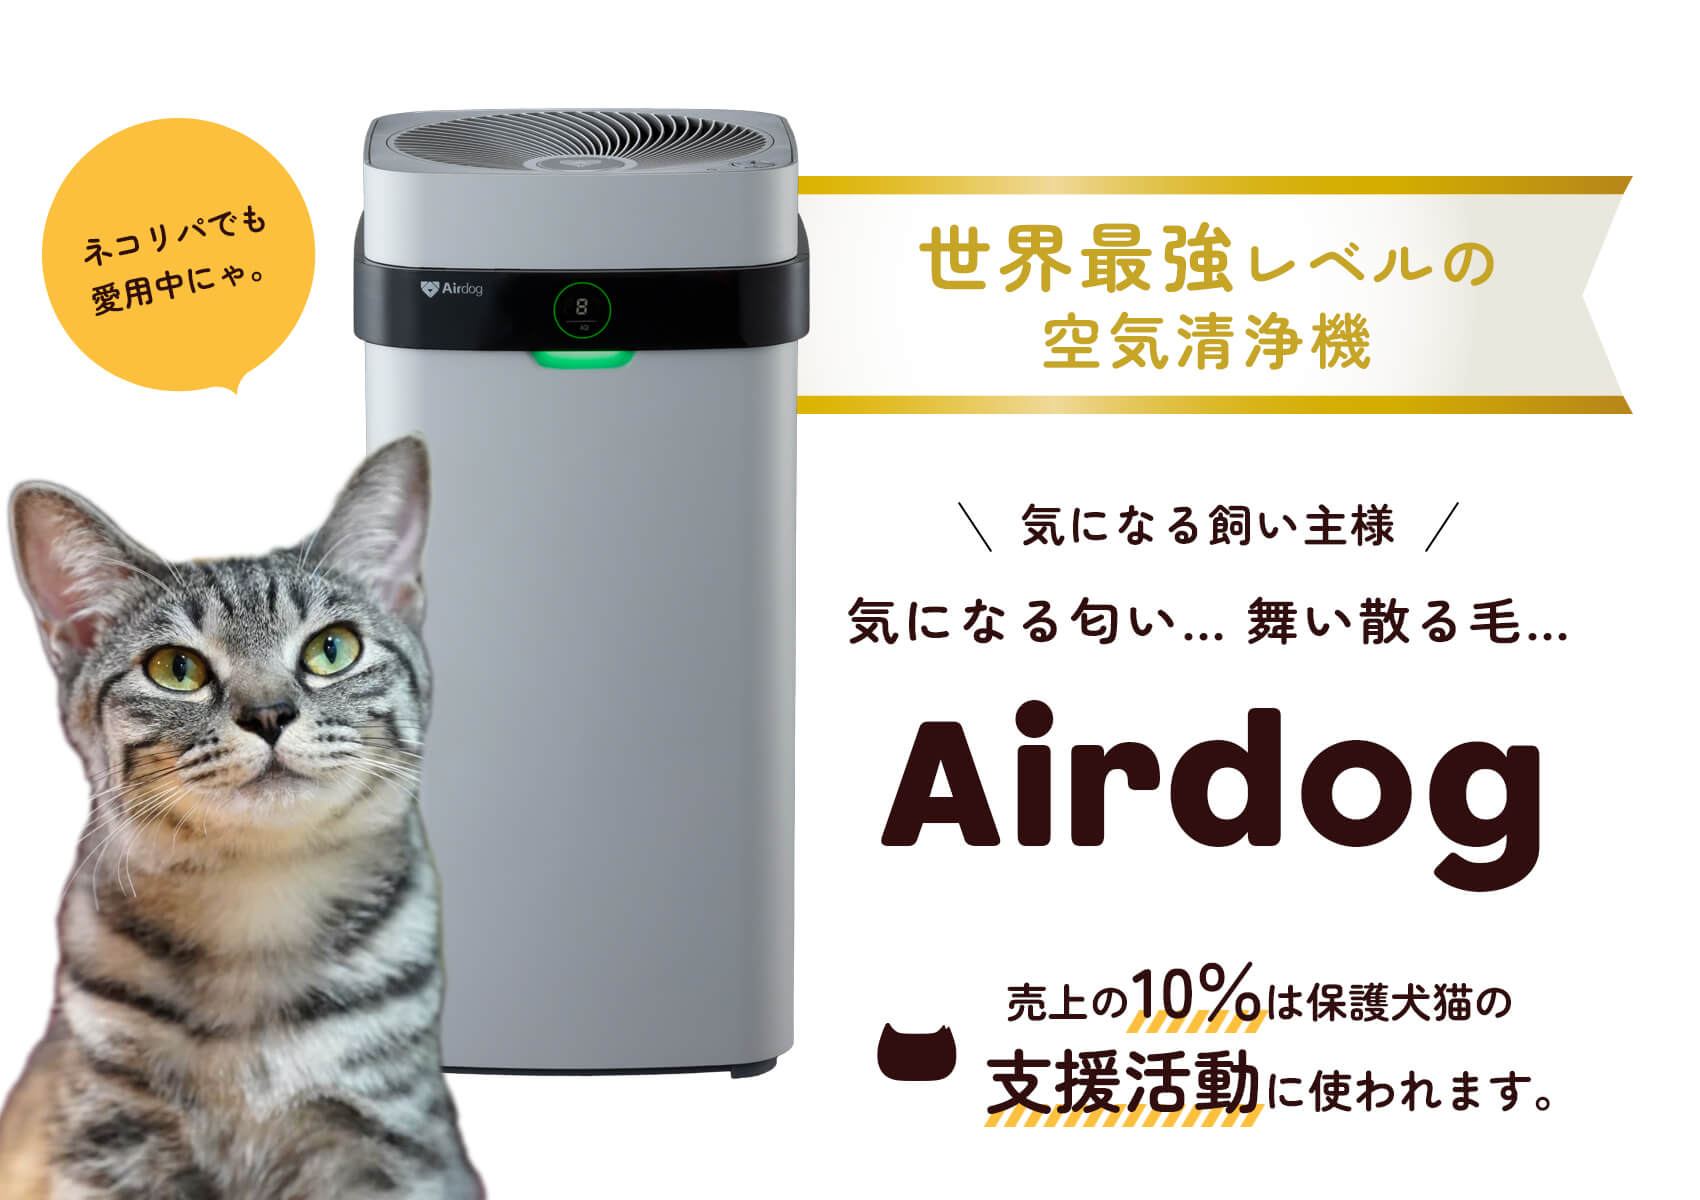 Airdog | 世界最強レベル高性能空気清浄機 | ネコリパブリック｜日本の